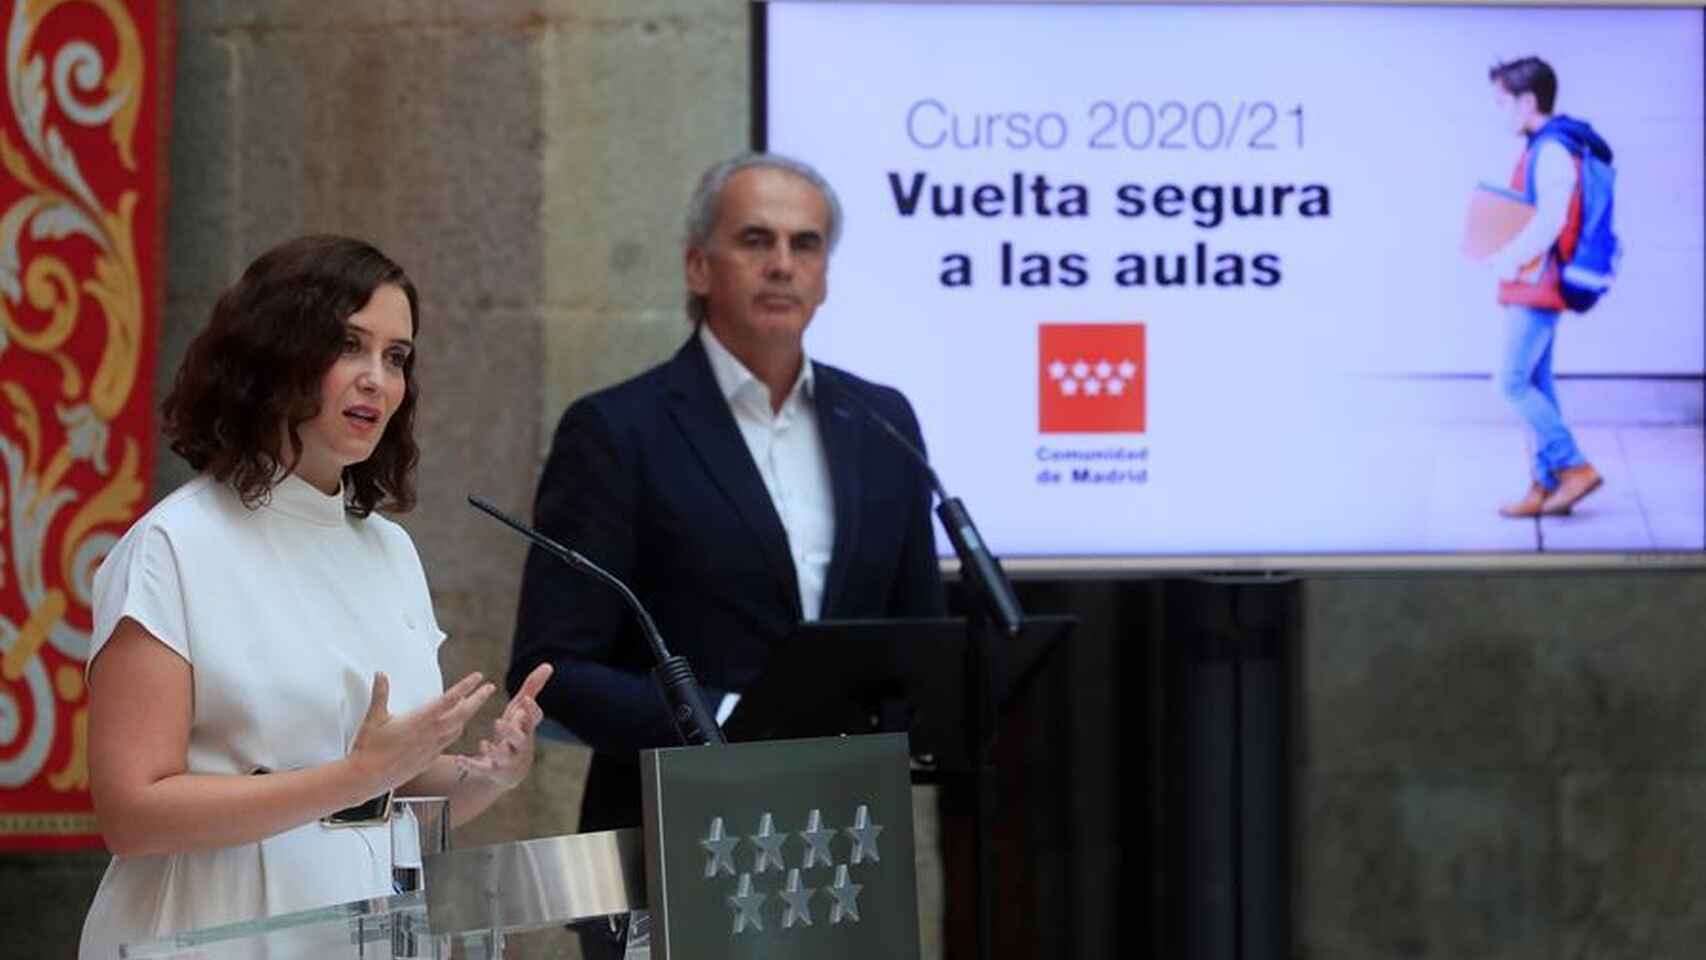 La presidenta de la Comunidad de Madrid, Isabel Díaz Ayuso, y el consejero de Educación, Enrique Ossorio, anuncian el plan para la vuelta al colegio.